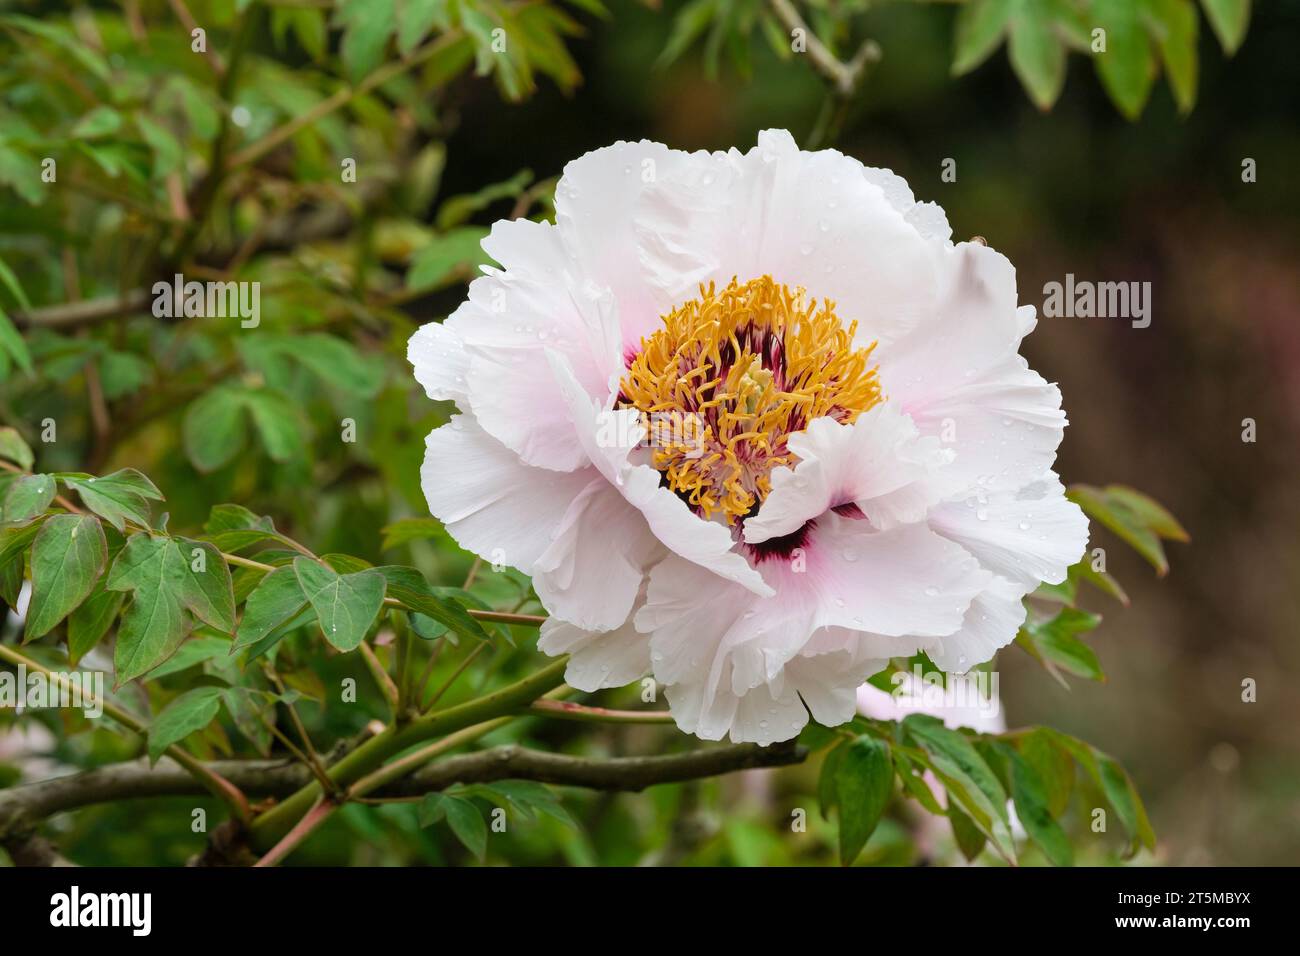 Paeonia Highdown, Peony Highdown, Gansu Group, grandi fiori viola pallido, marcature viola scure centrali che invecchiano fino al bianco in estate Foto Stock